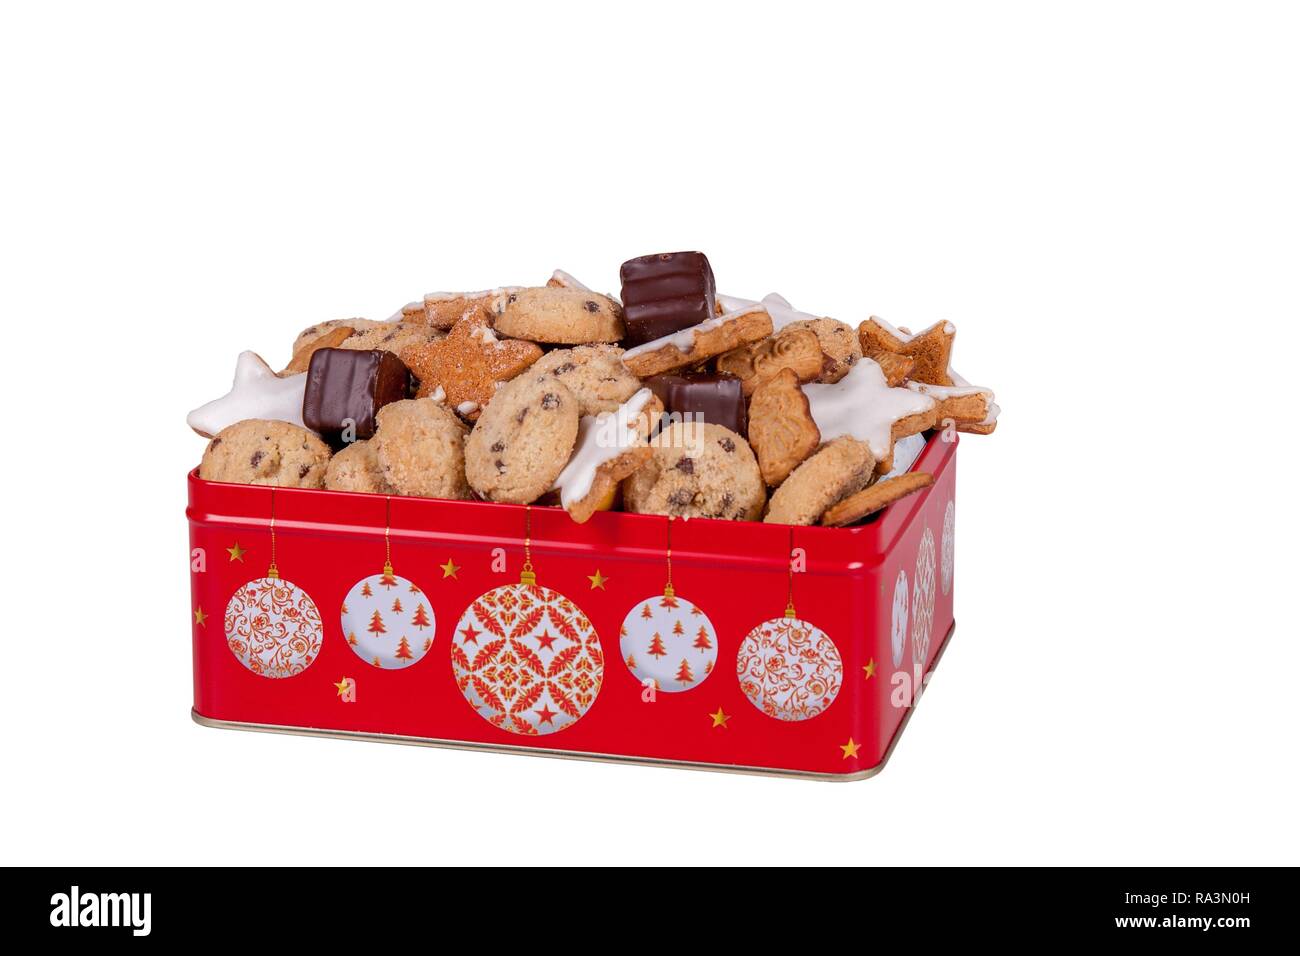 Biscuits de Noël dans une boîte rouge, dentelle, Allemagne Banque D'Images